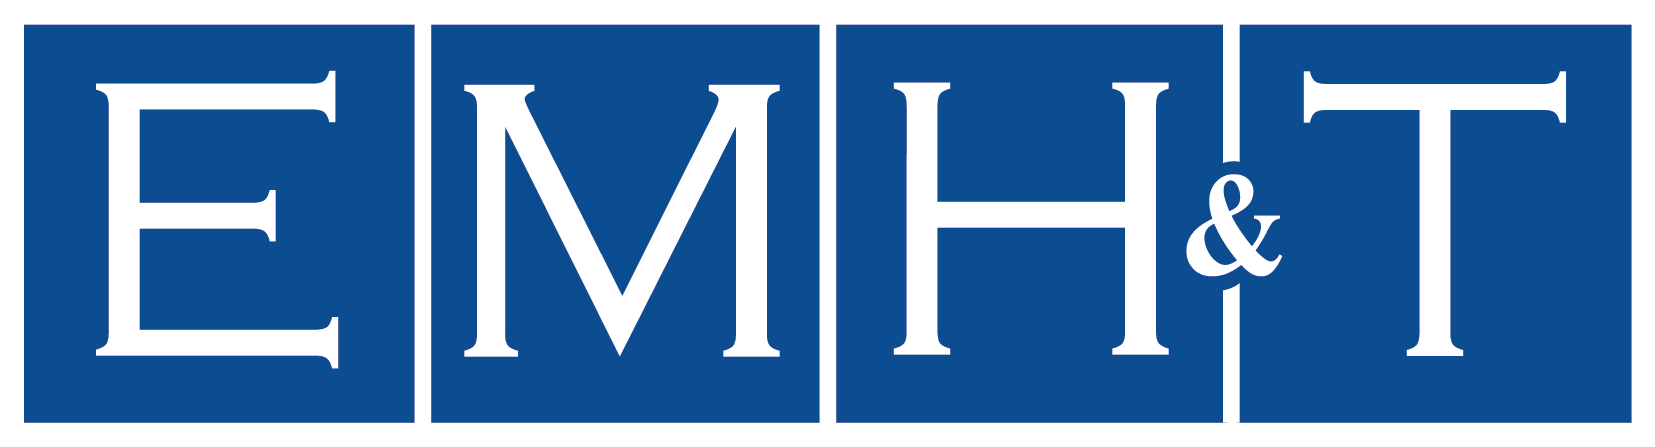 EMH&T Company Logo